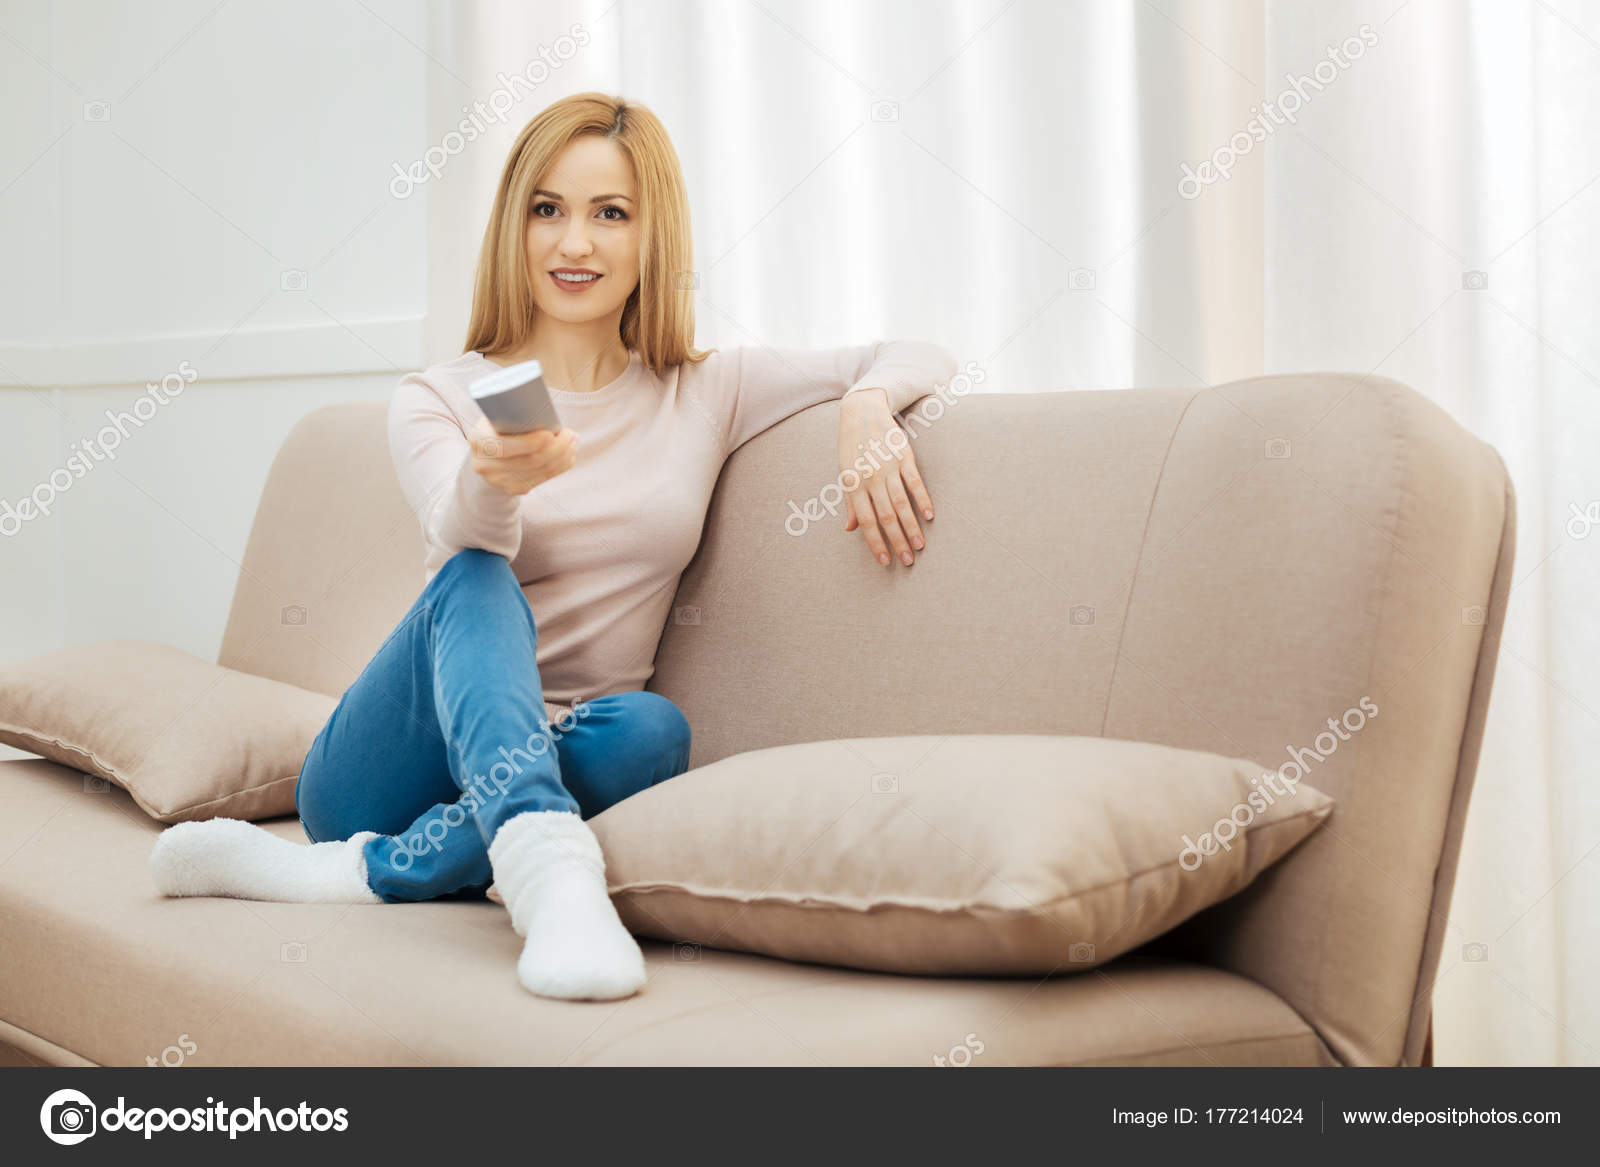 Glückliche Frau Auf Dem Sofa Mit Fernbedienung Stockfotografie Lizenzfreie Fotos © Yacobchuk1